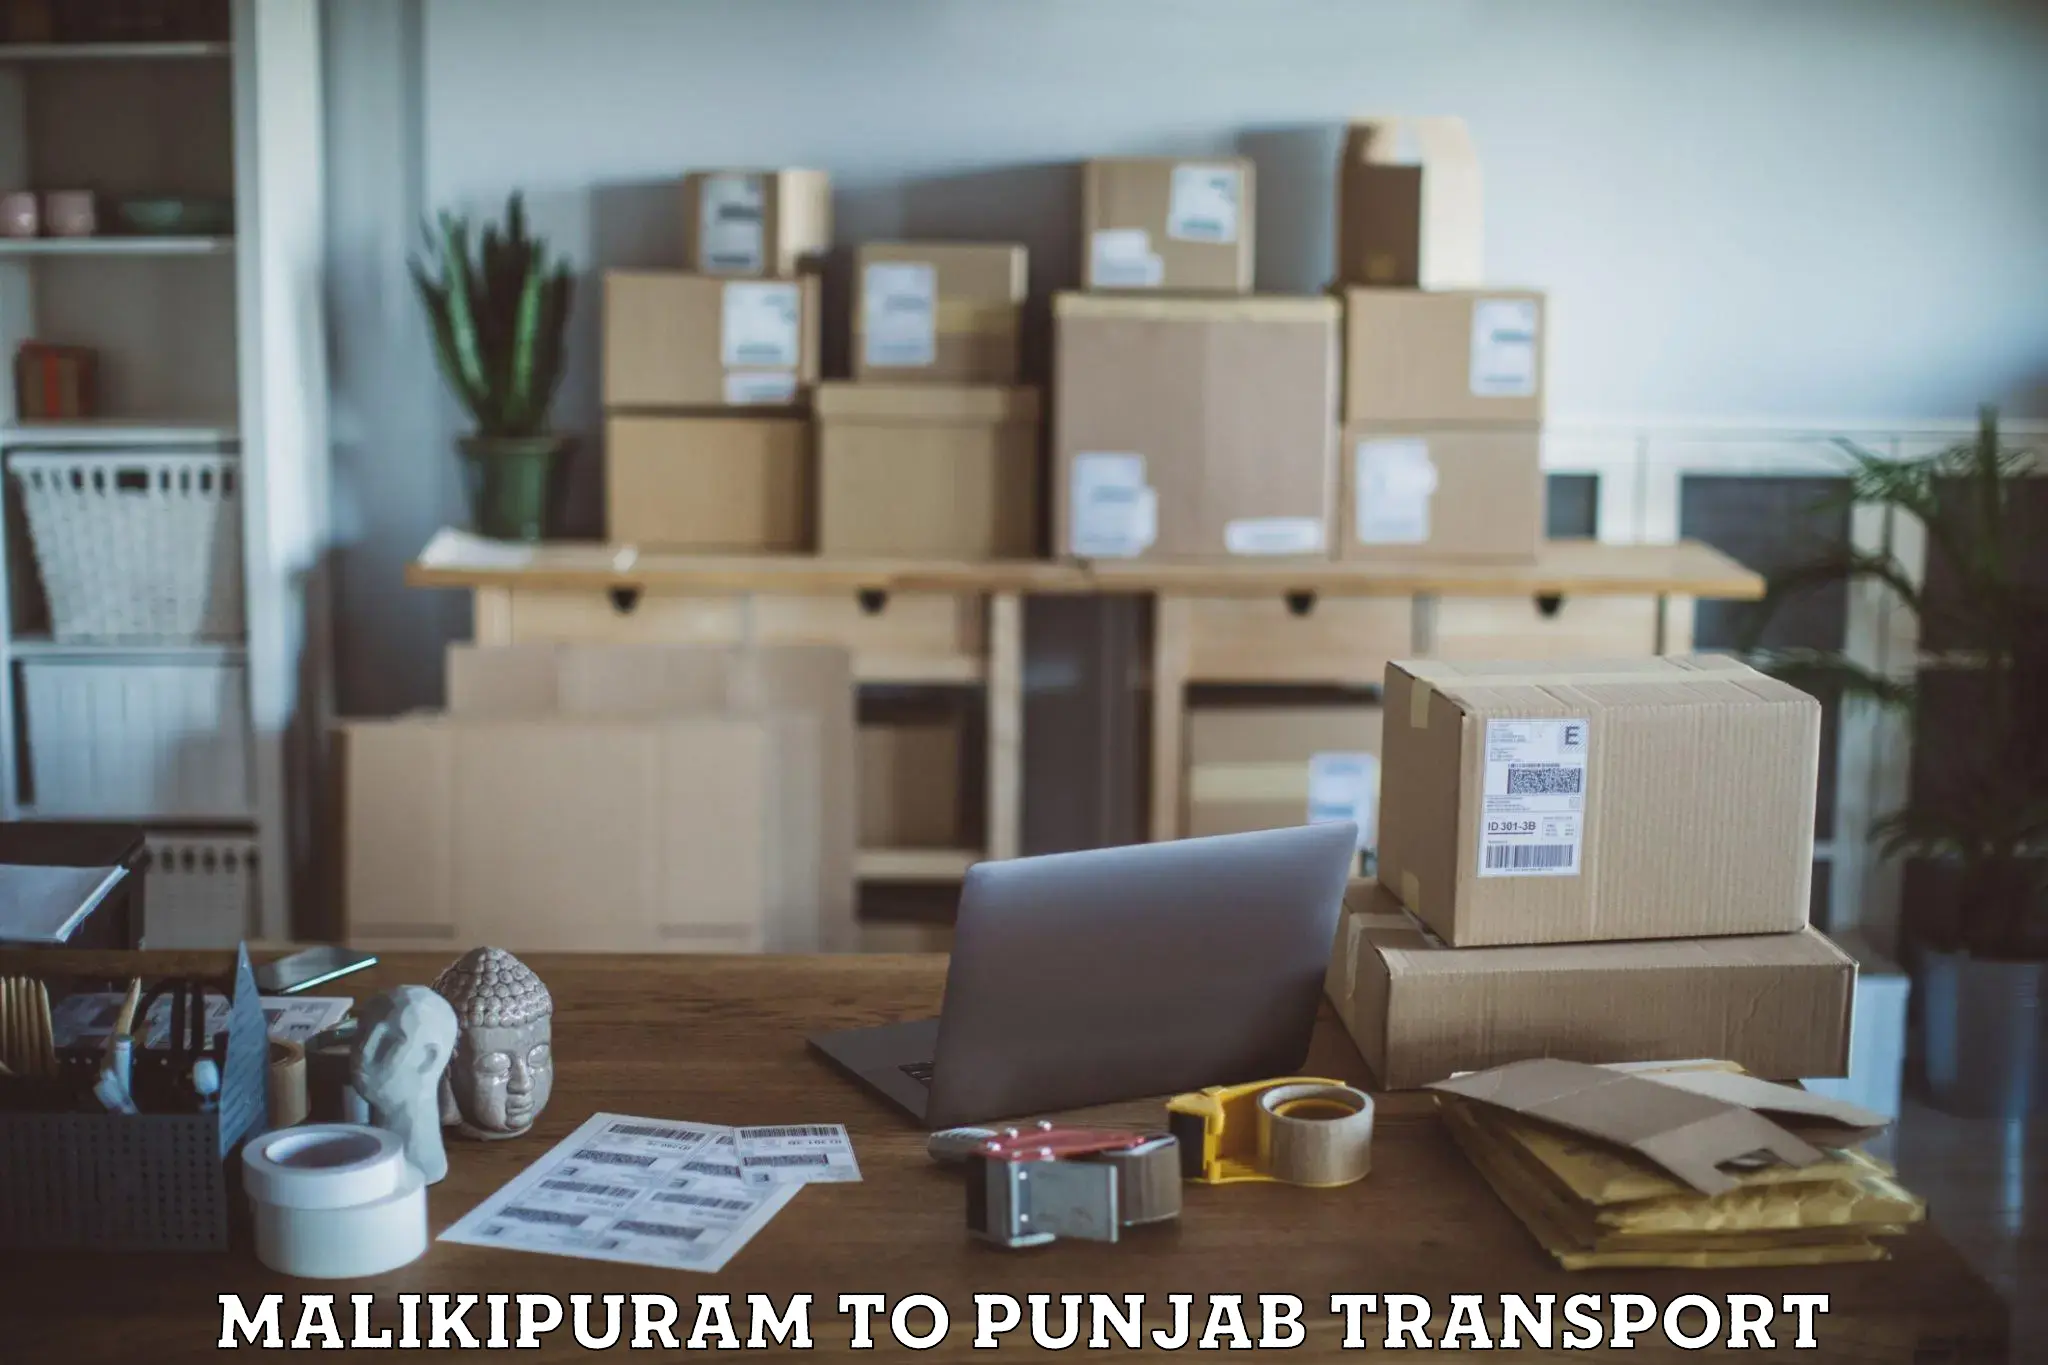 Furniture transport service Malikipuram to Punjab